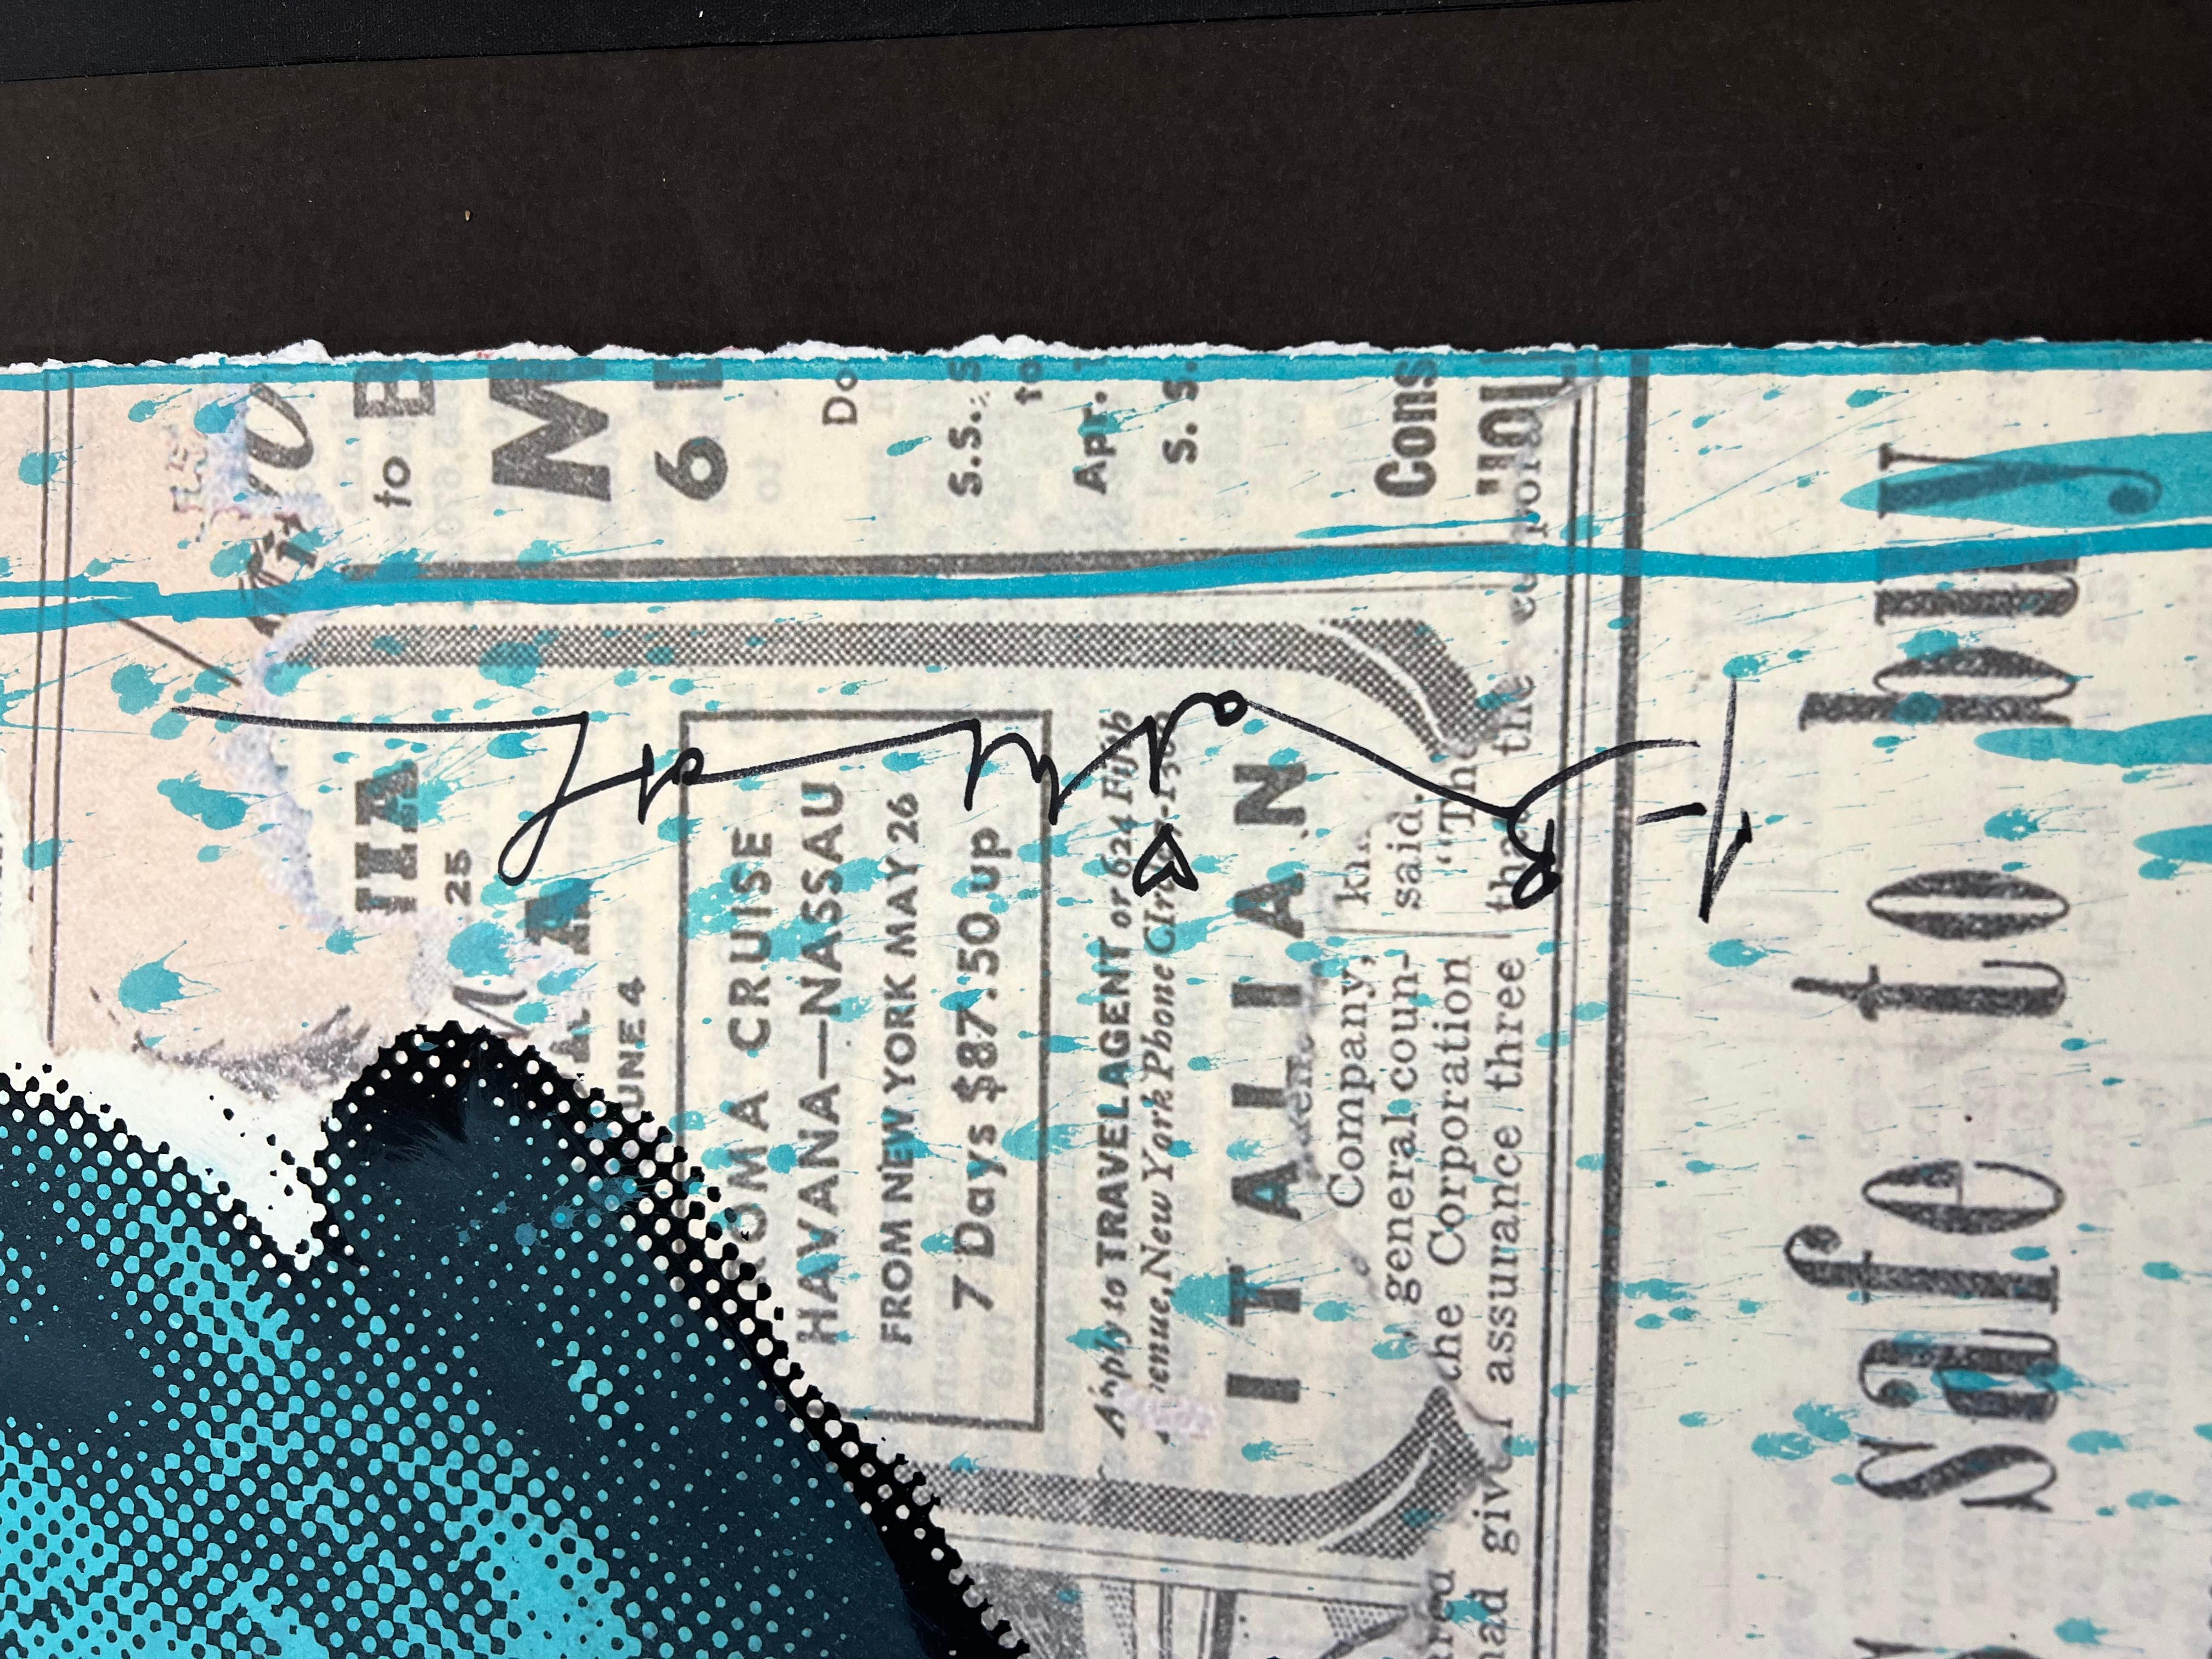 Sérigraphie unique en couleurs avec coloriage à la main sur papier vélin, signée à l'encre noire au recto, signée au crayon au verso et numérotée 1/1, avec l'empreinte digitale de l'artiste et la date, publiée par l'artiste, la feuille